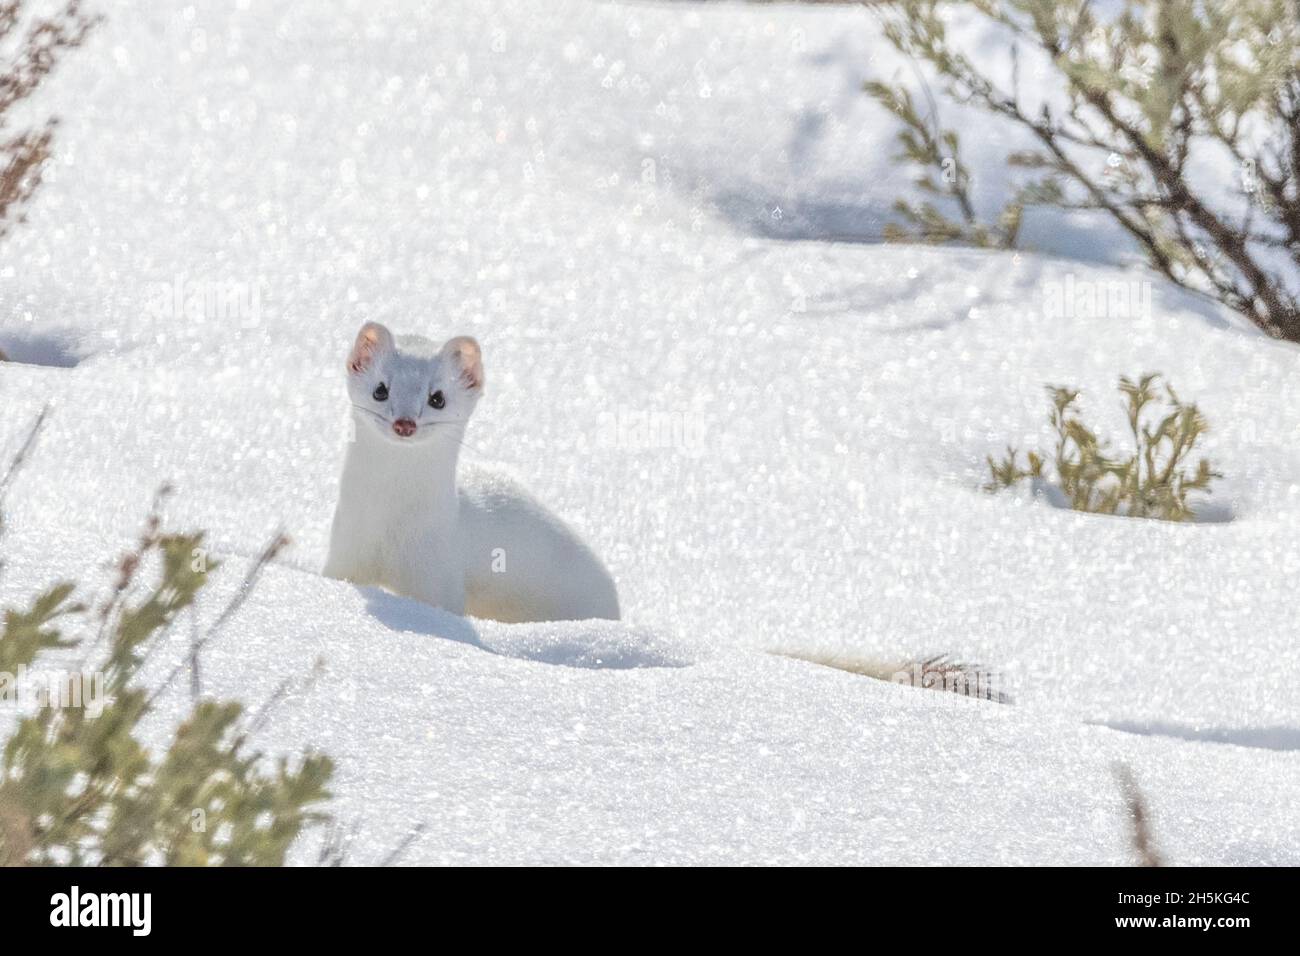 Un wetel de cola corta (Mustela erminea) está parado en la nieve mirando la cámara, camuflado en su abrigo blanco del invierno Foto de stock